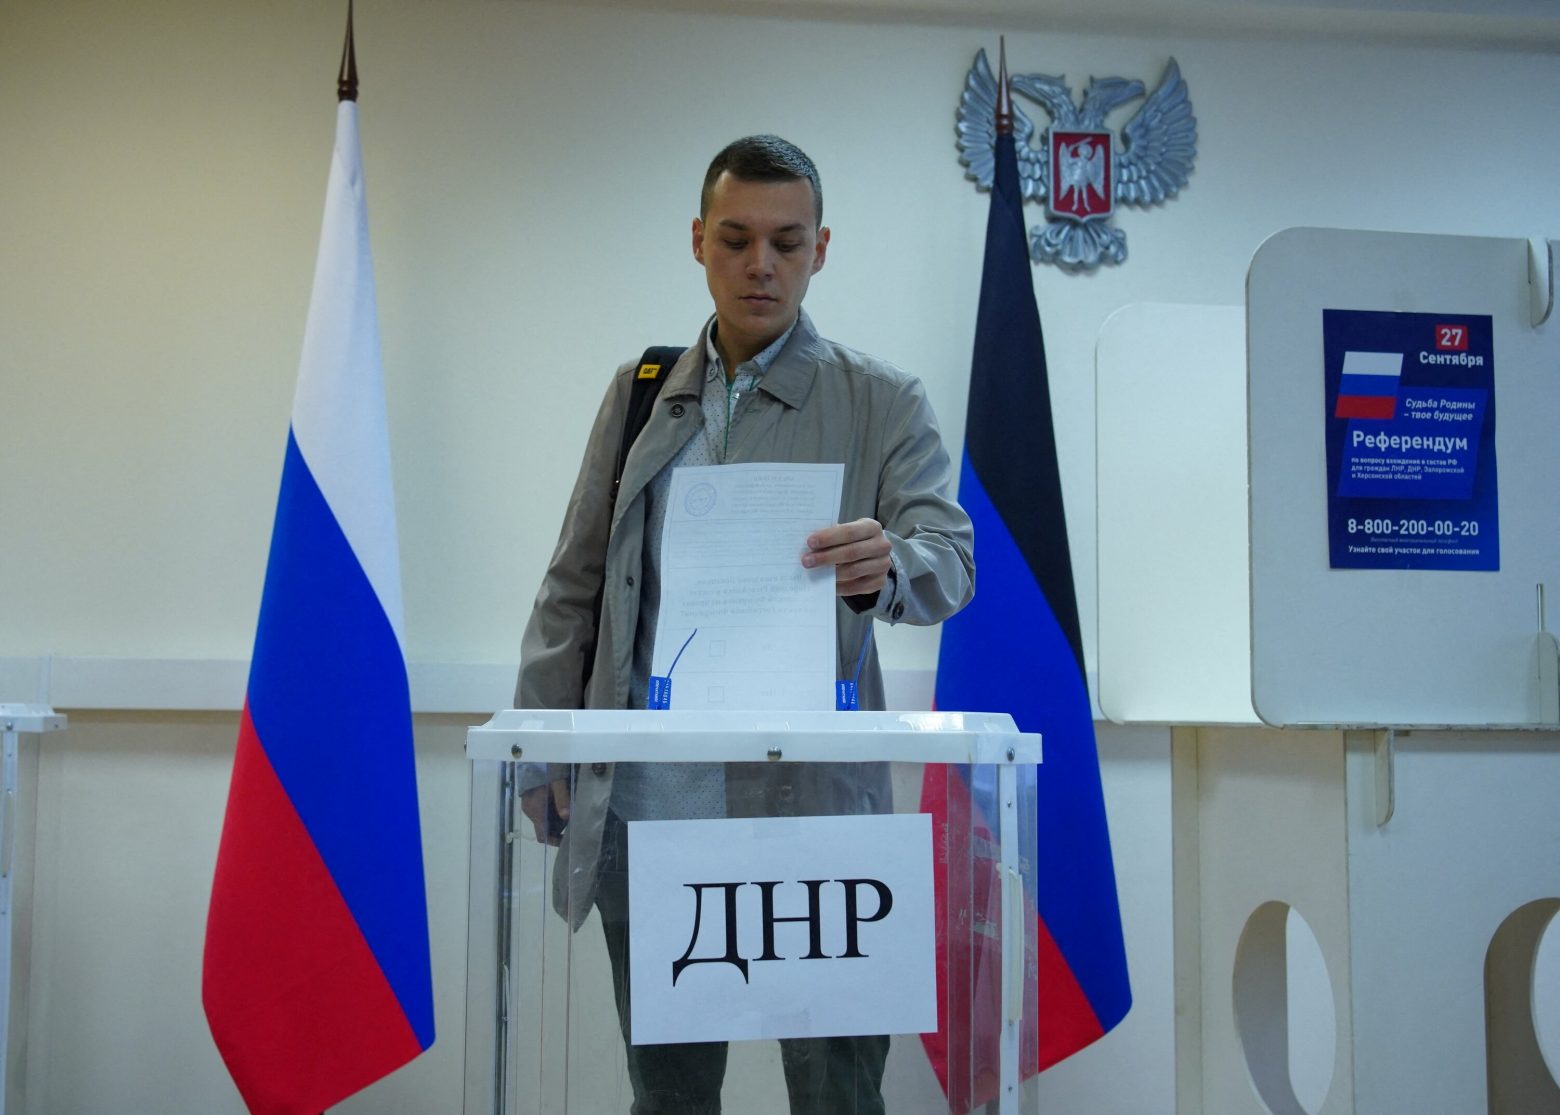 Ρωσία: Σε εξέλιξη τα δημοψηφίσματα – Τι υποστηρίζουν Ρώσοι και αυτονομιστές